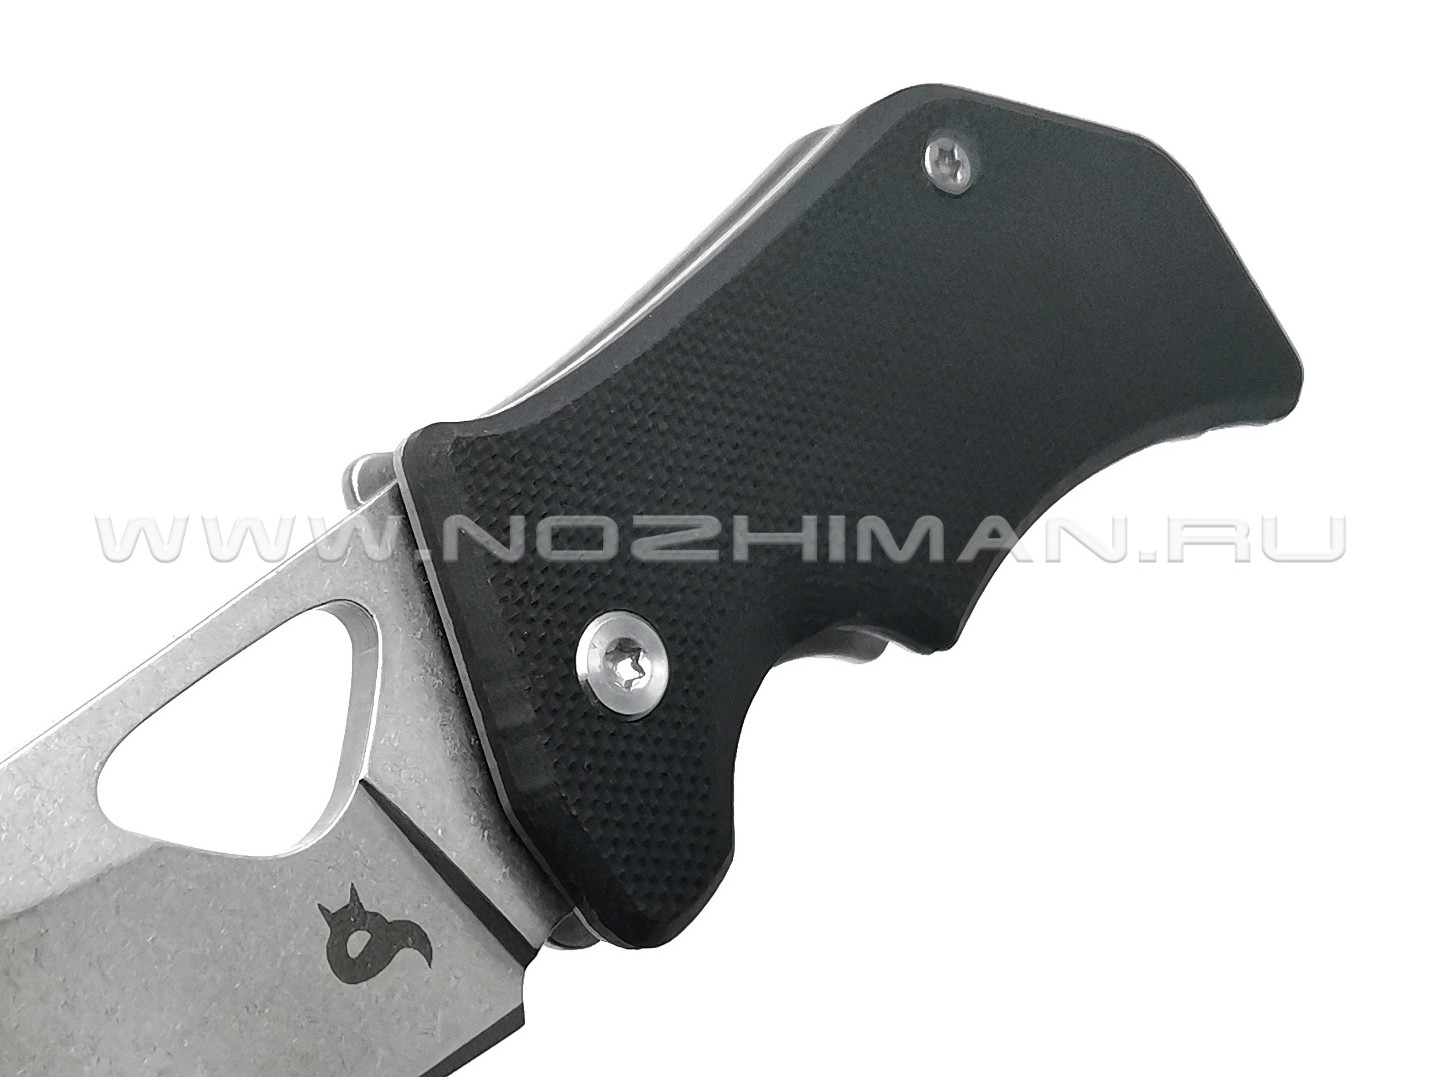 Нож Fox Kit BF-752 сталь 440C, рукоять G10 black